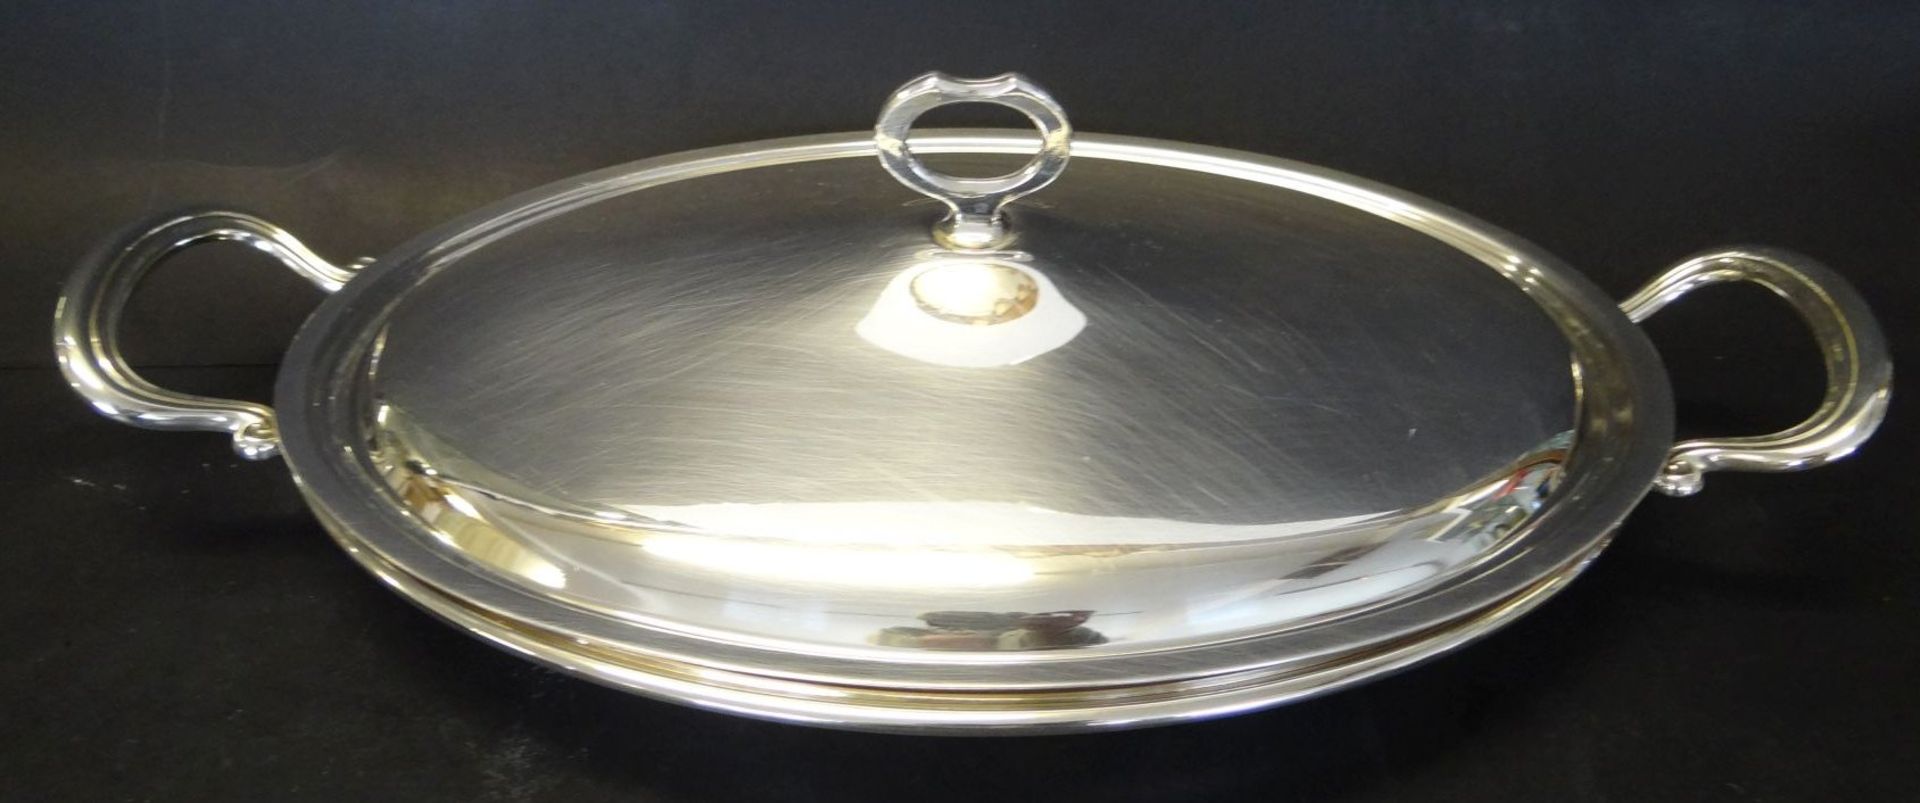 grosse ovale Warmhalteschale, plated, 45x25 cm - Bild 2 aus 5